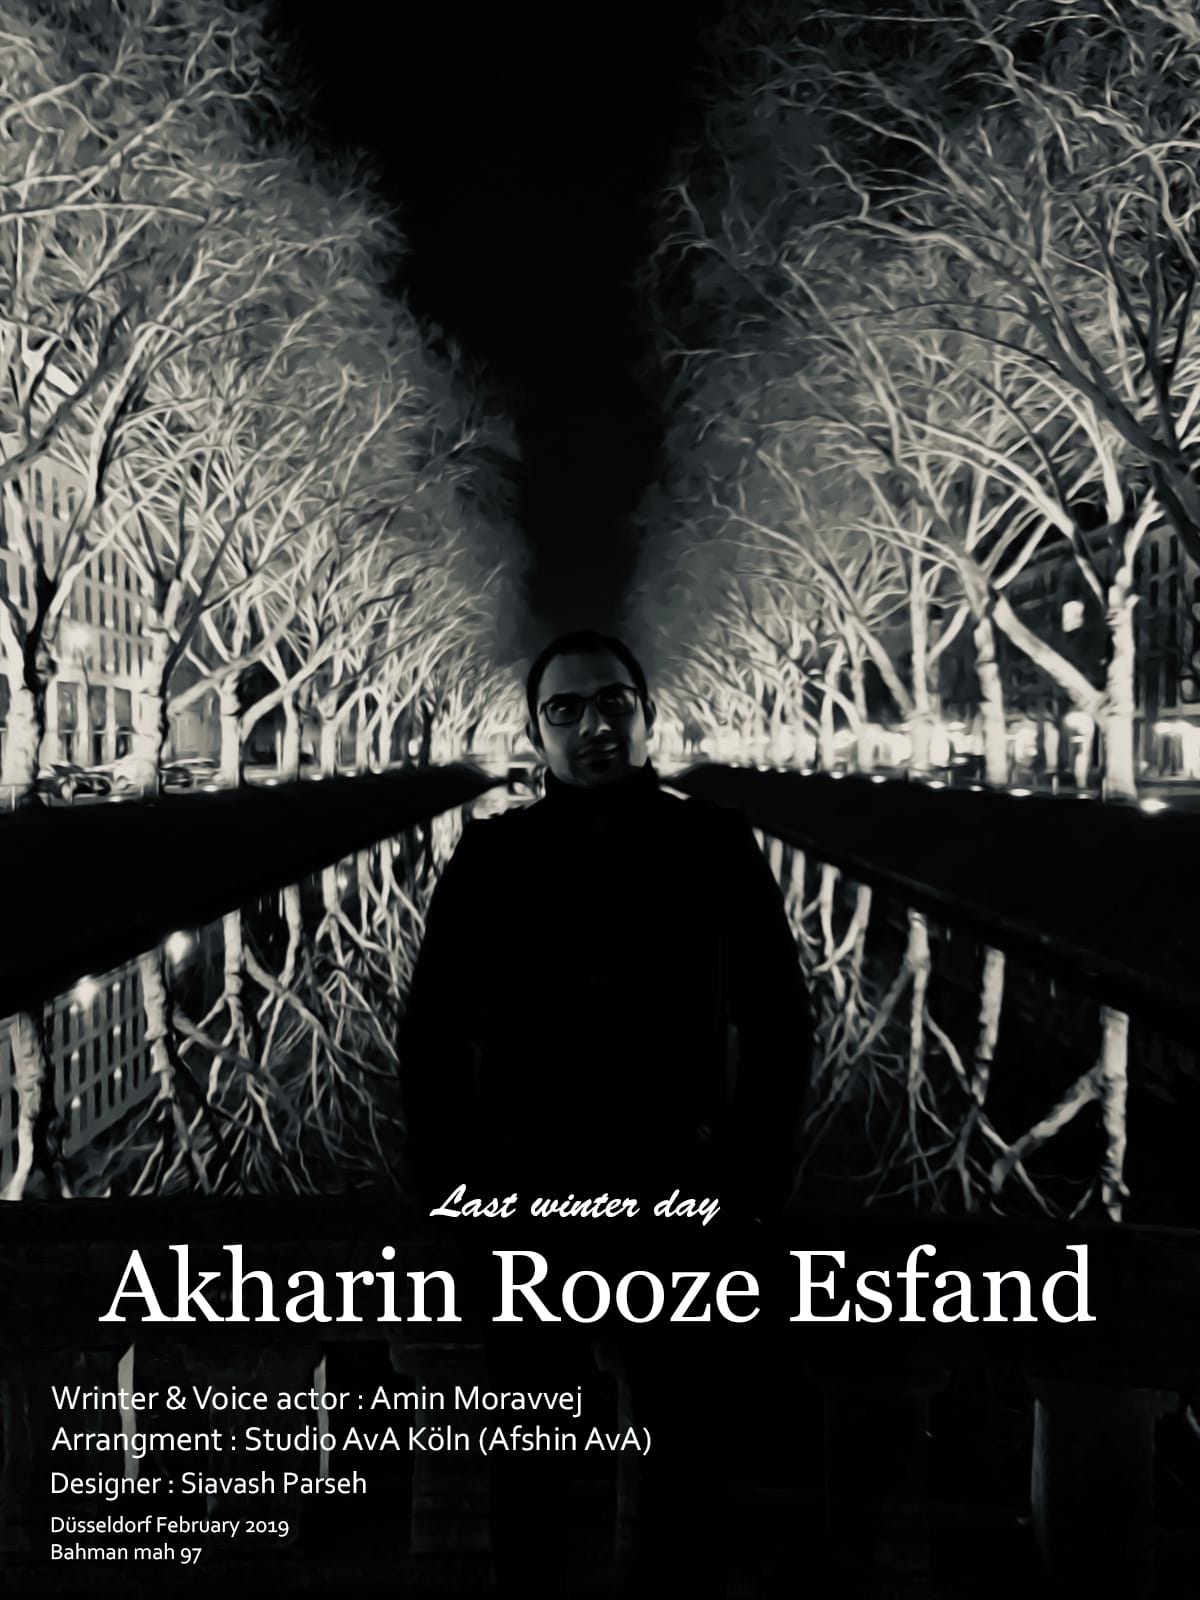  دانلود آهنگ جدید امین مروج - آخرین روز اسفند | Download New Music By Amin Moravvej - Akharin Rooze Esfand